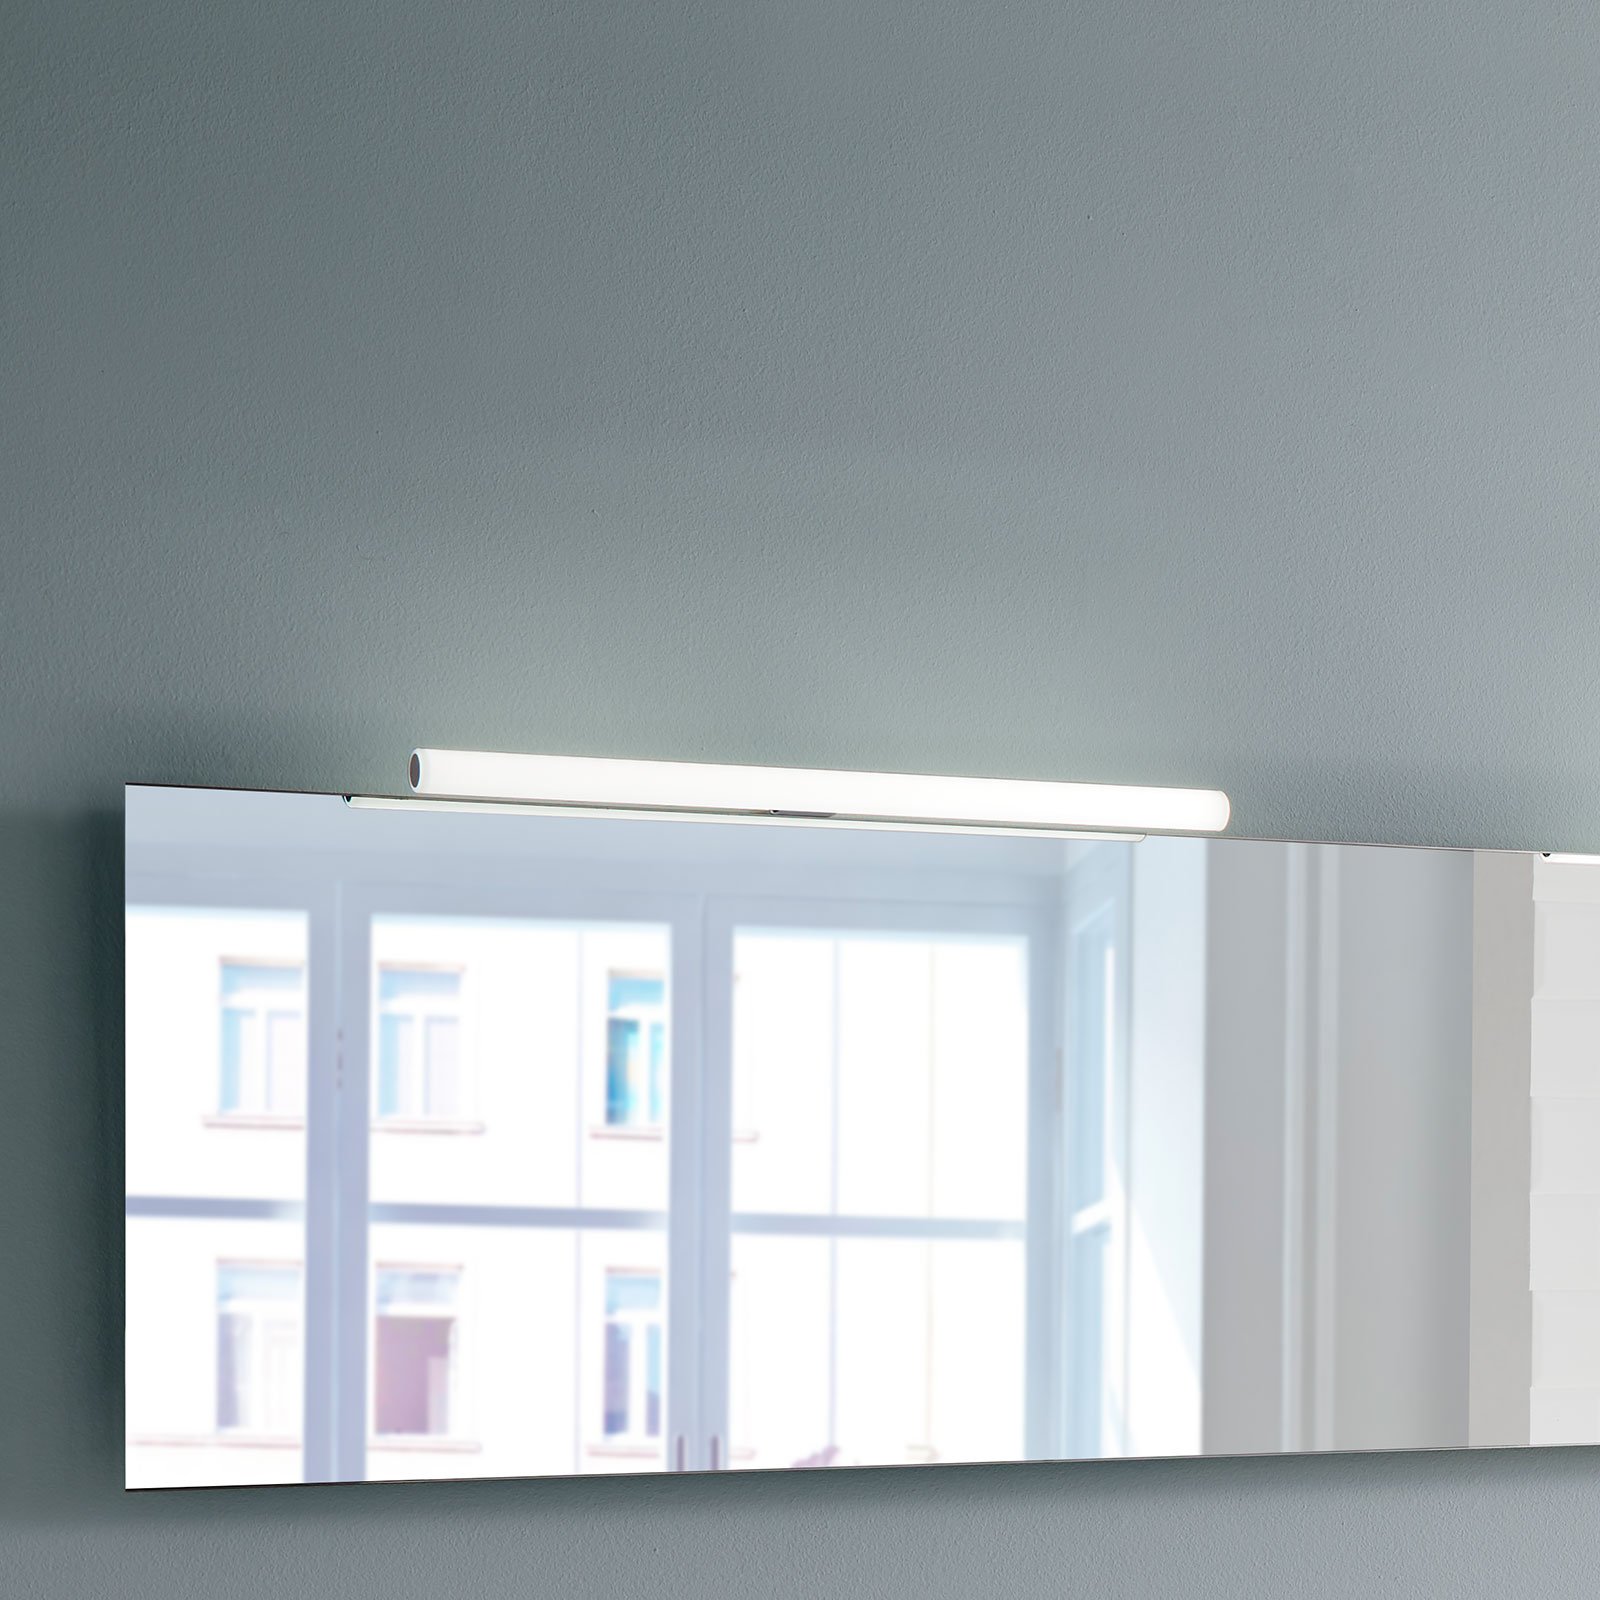 LED mirror light Irene 2, width 80 cm